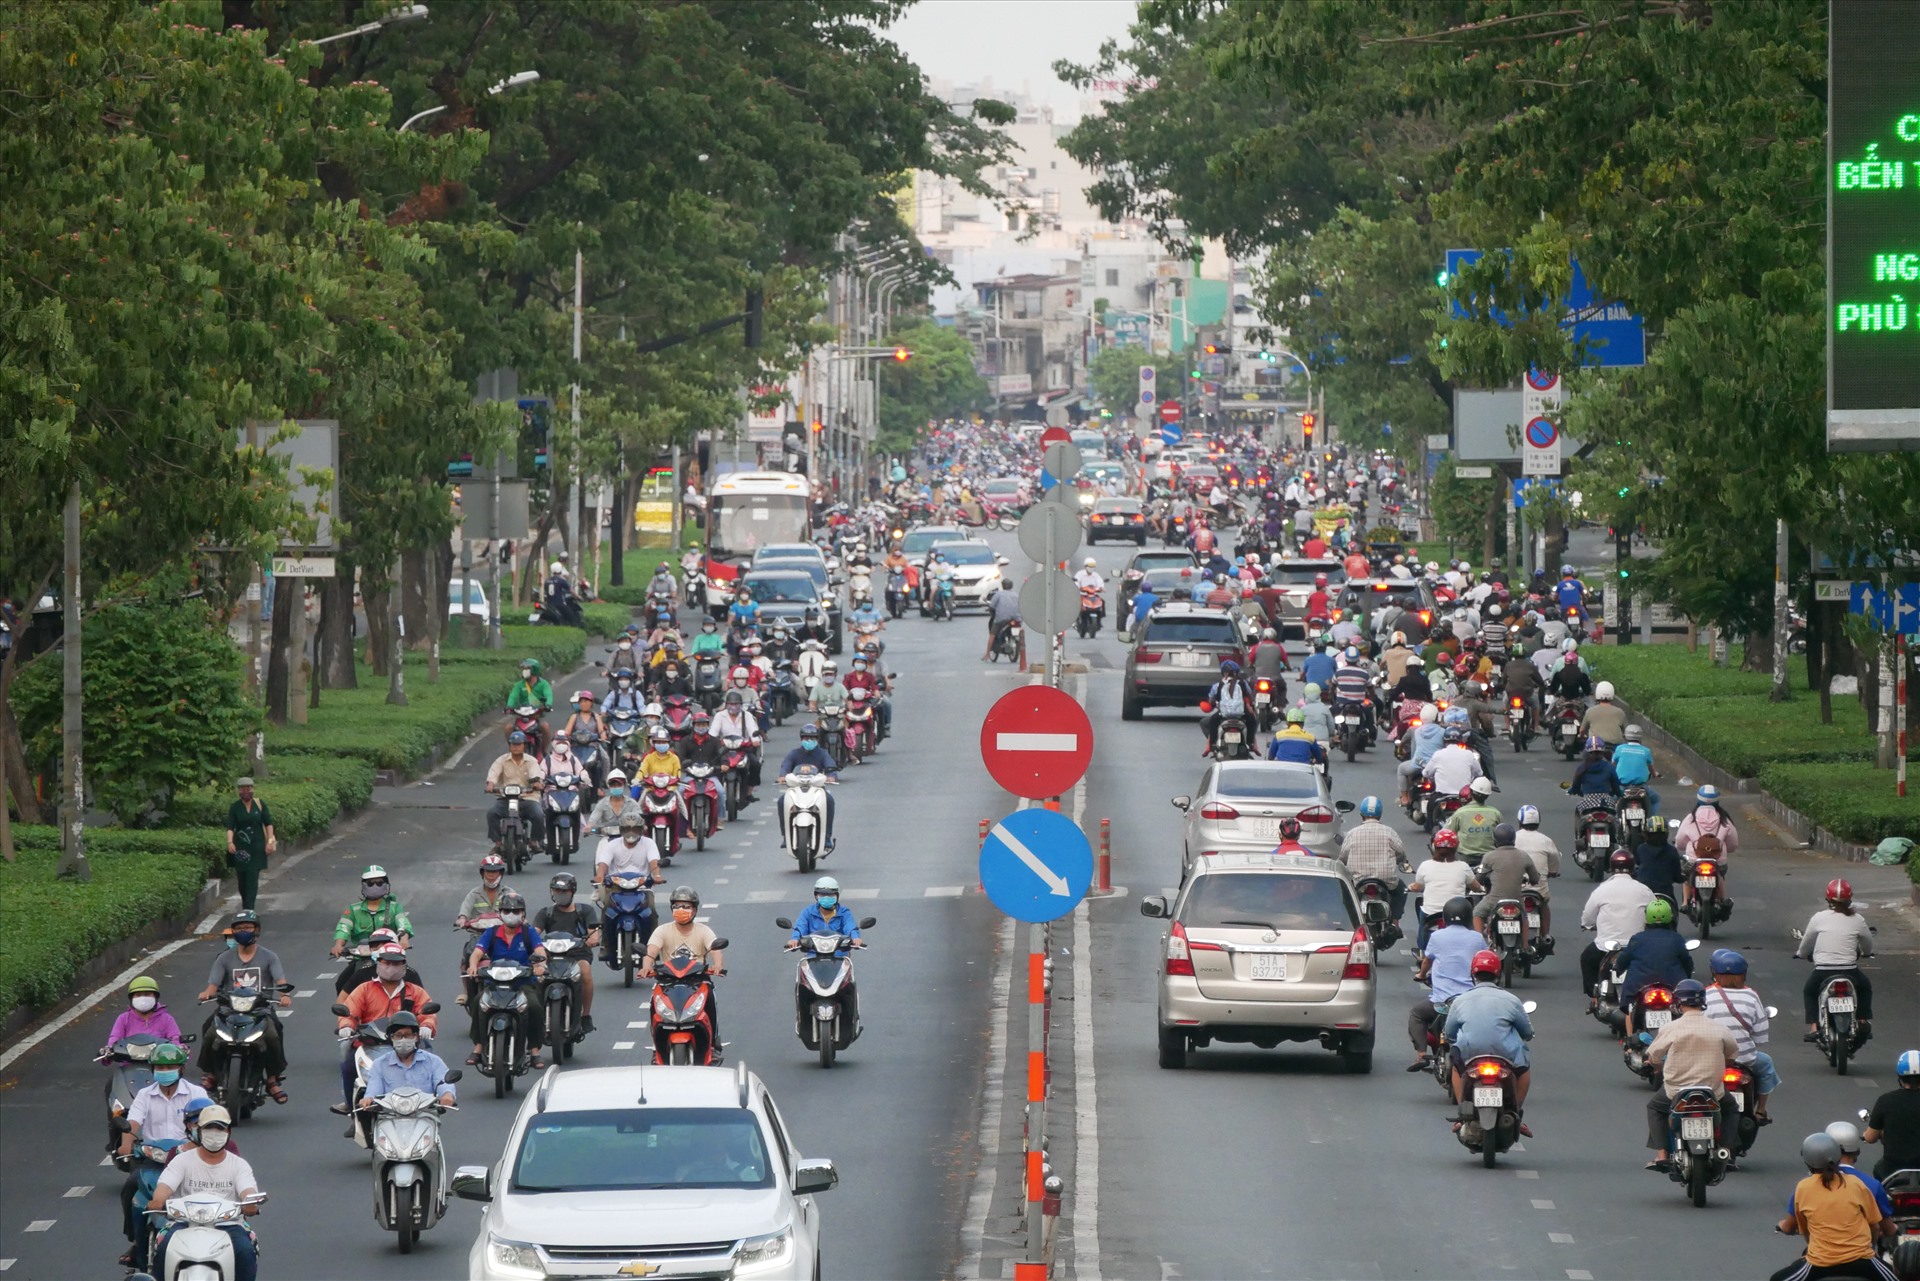 Trên đường Nguyễn Văn Cừ (quận 5) có khá đông người tham gia giao thông dù hiện đang trong giai đoạn thực hiện chỉ thị cách ly xã hội của Thủ tướng Chính Phủ, hạn chế ra ngoài nếu không có việc cần thiết.